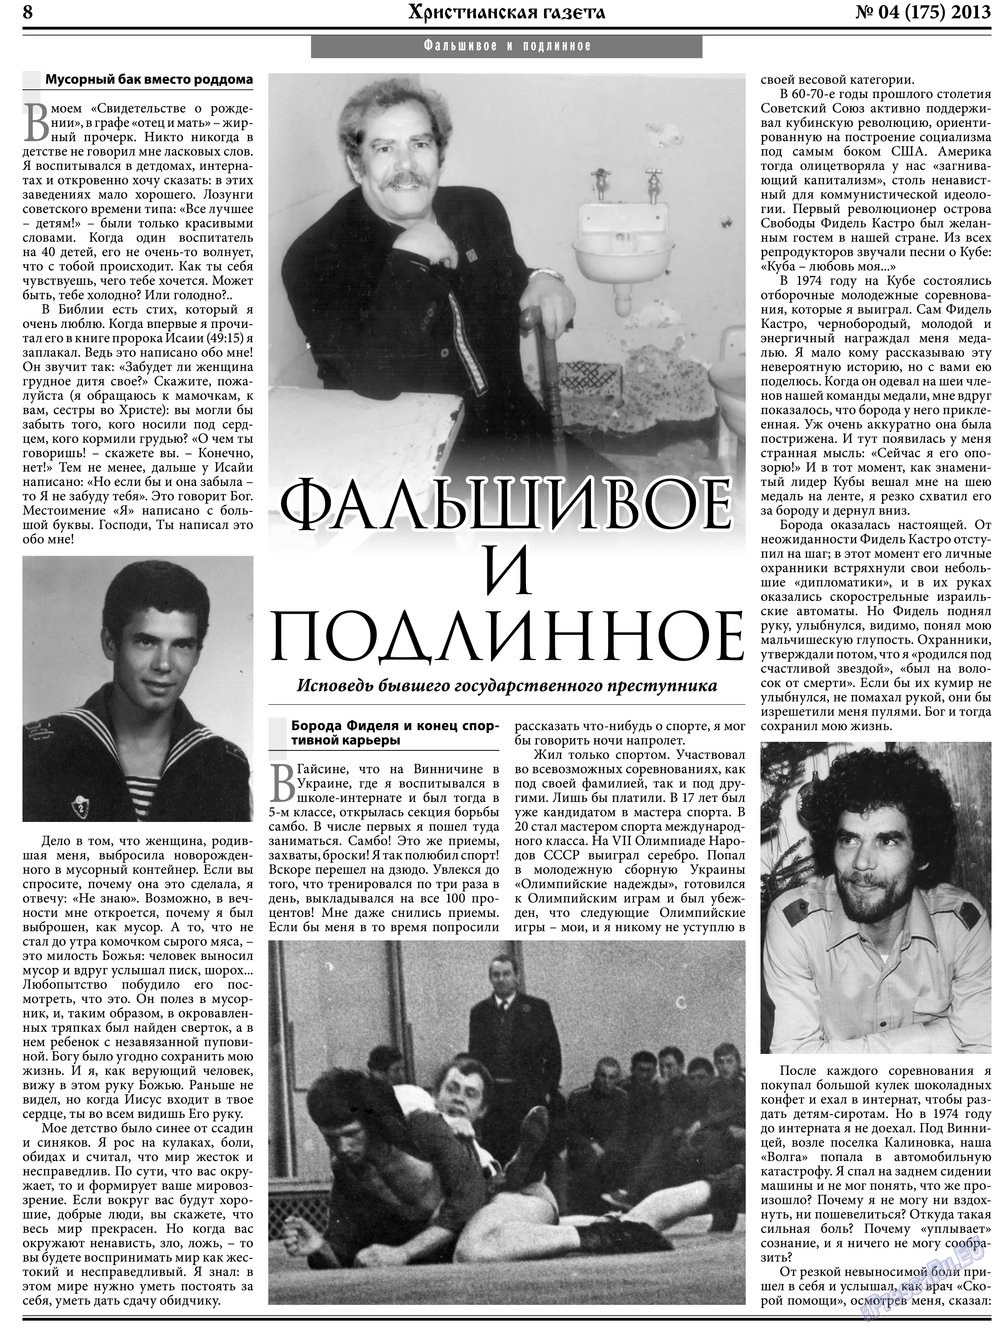 Христианская газета, газета. 2013 №4 стр.8